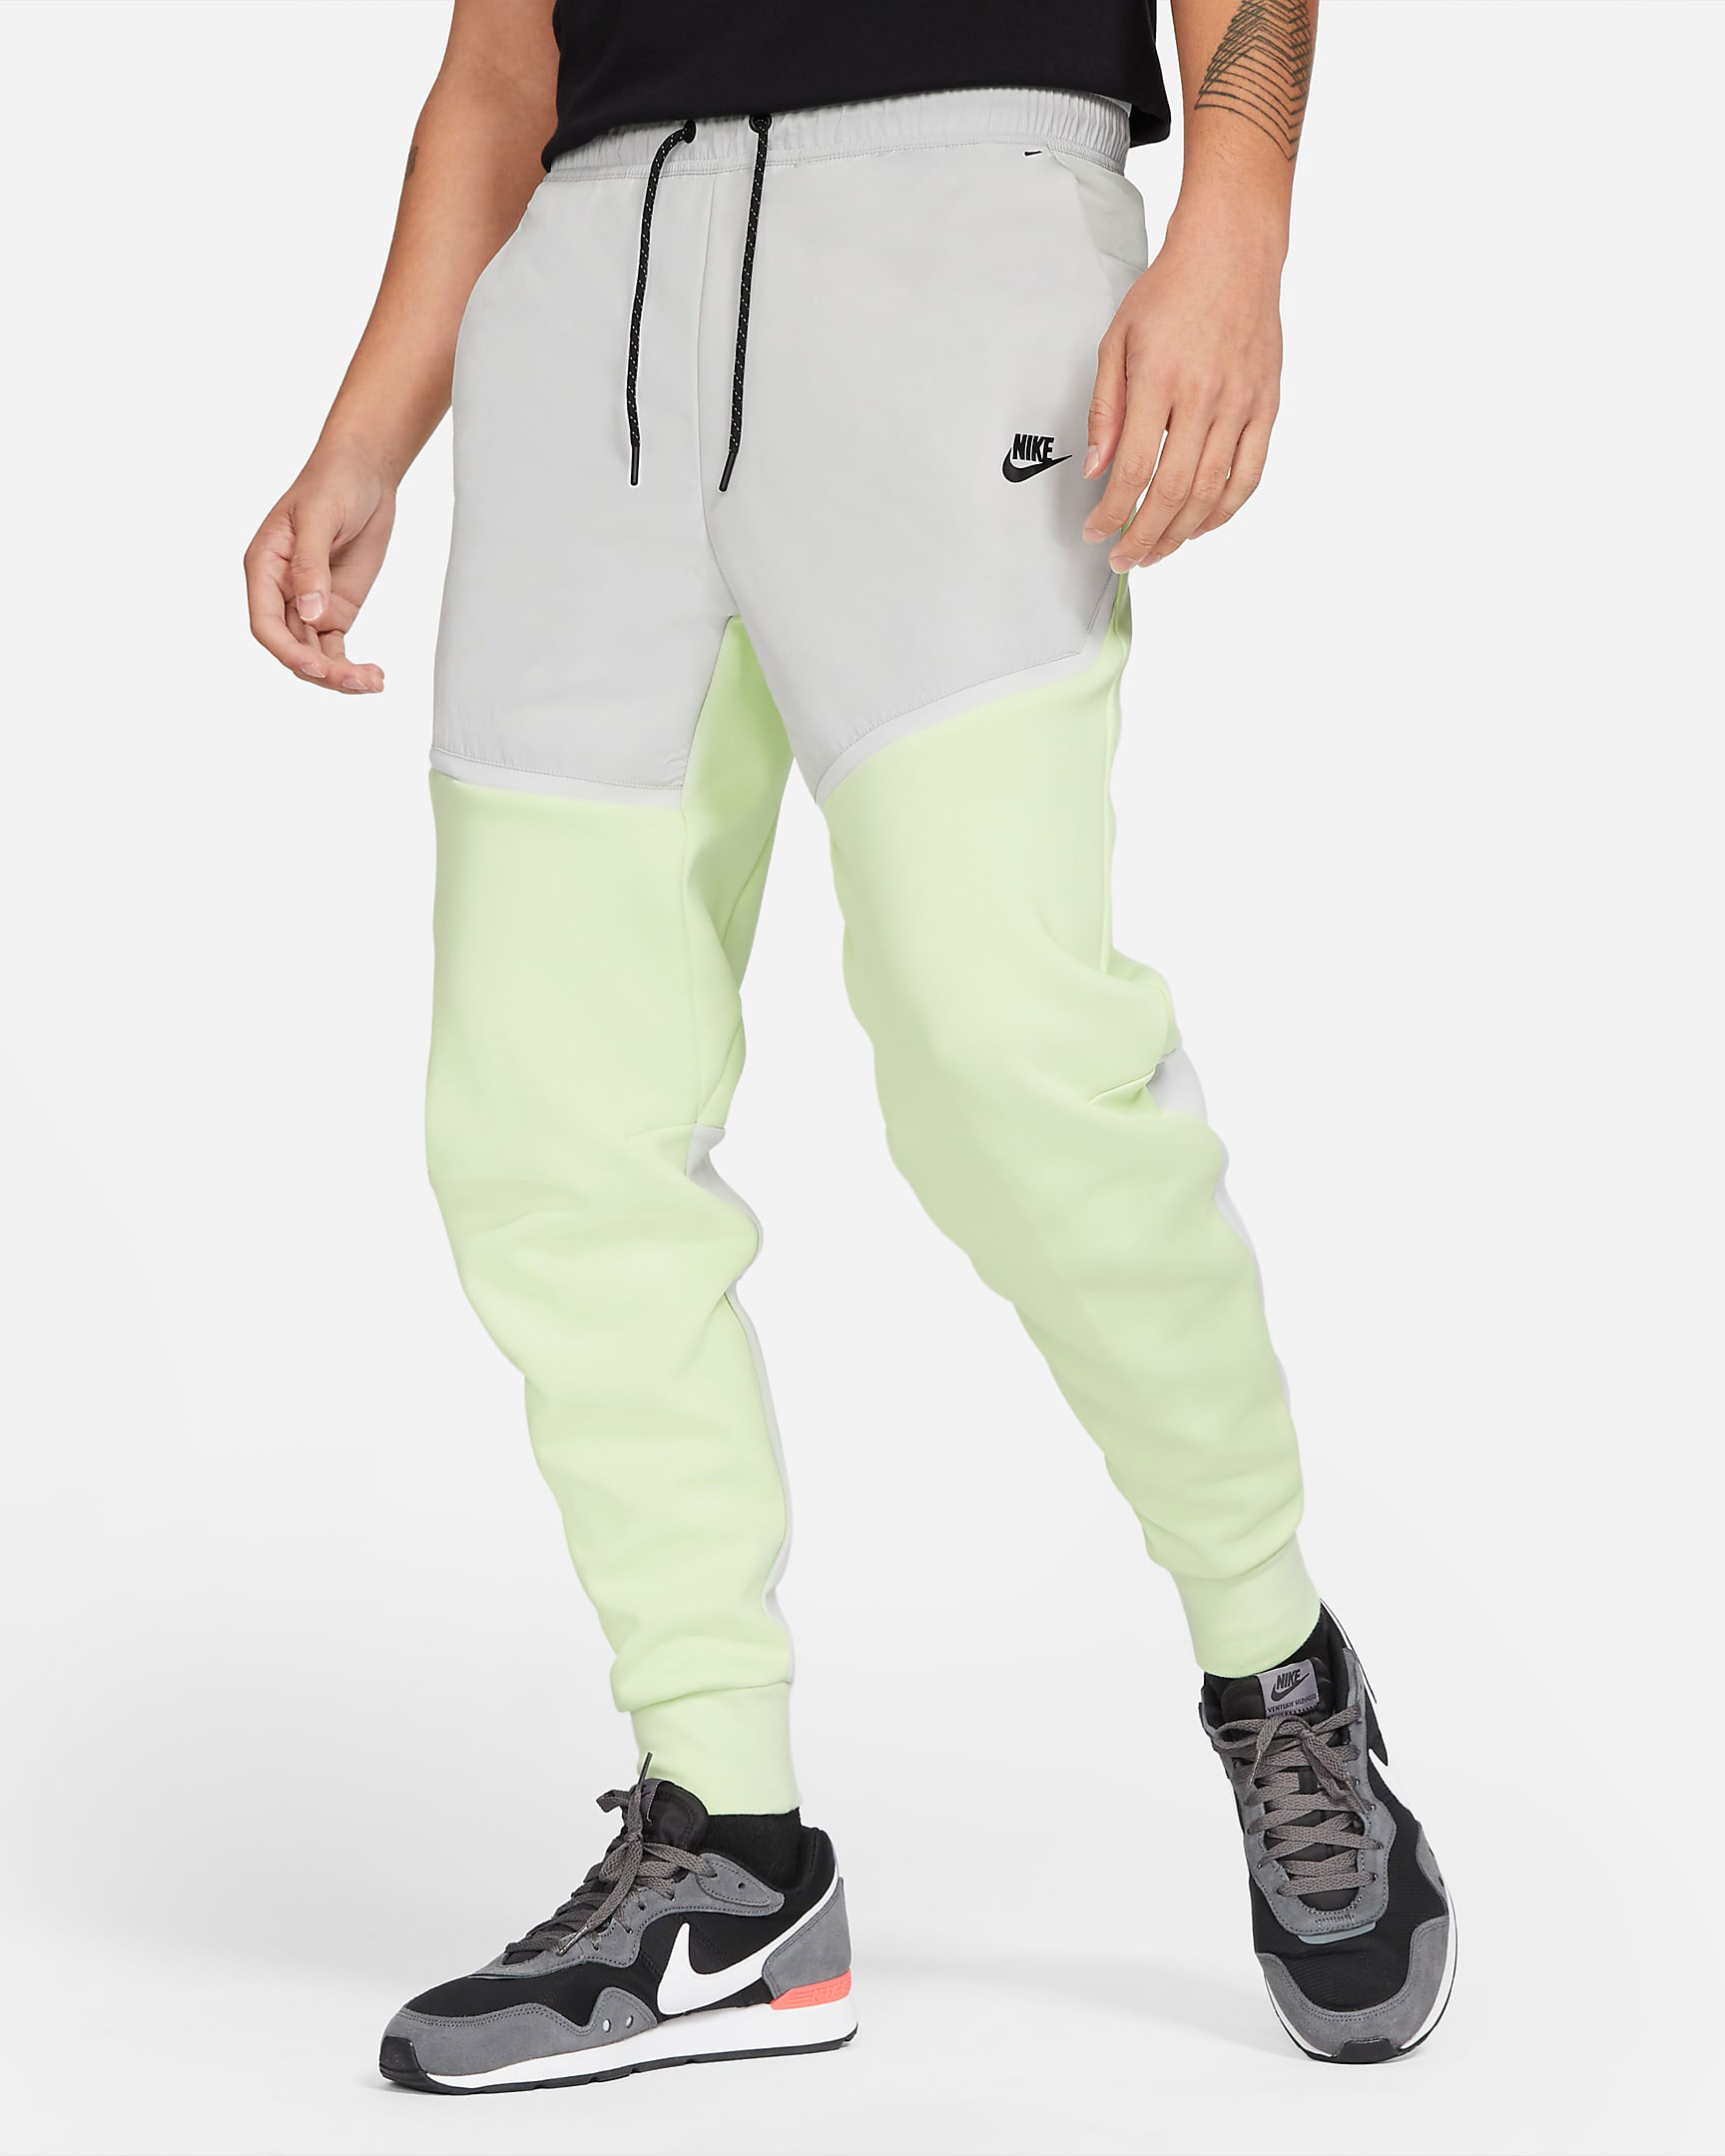 nike-sportswear-light-liquid-lime-grey-tech-fleece-joggers-1